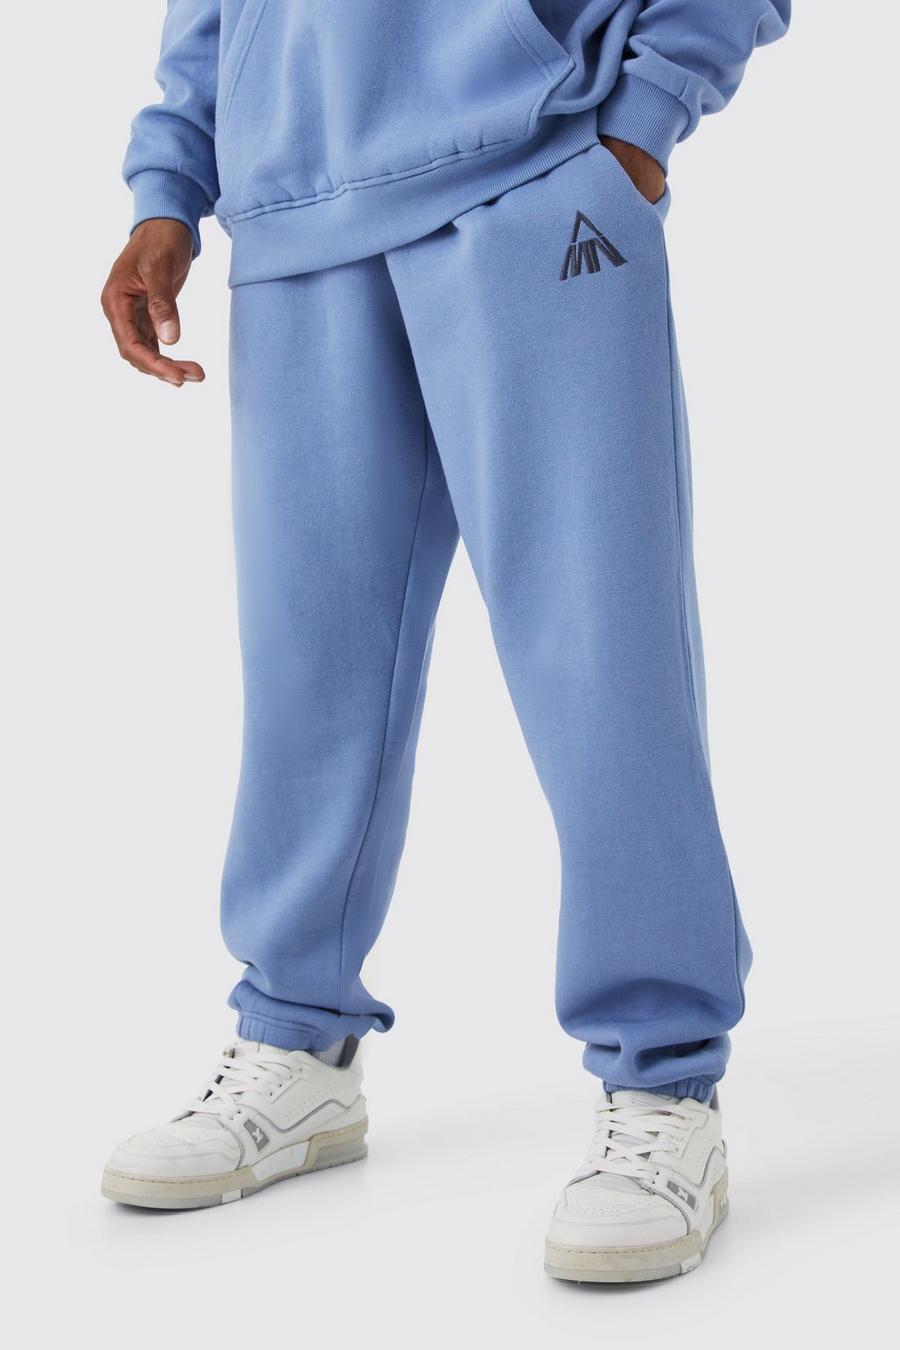 Pantaloni tuta Man oversize Basic, Dusty blue image number 1